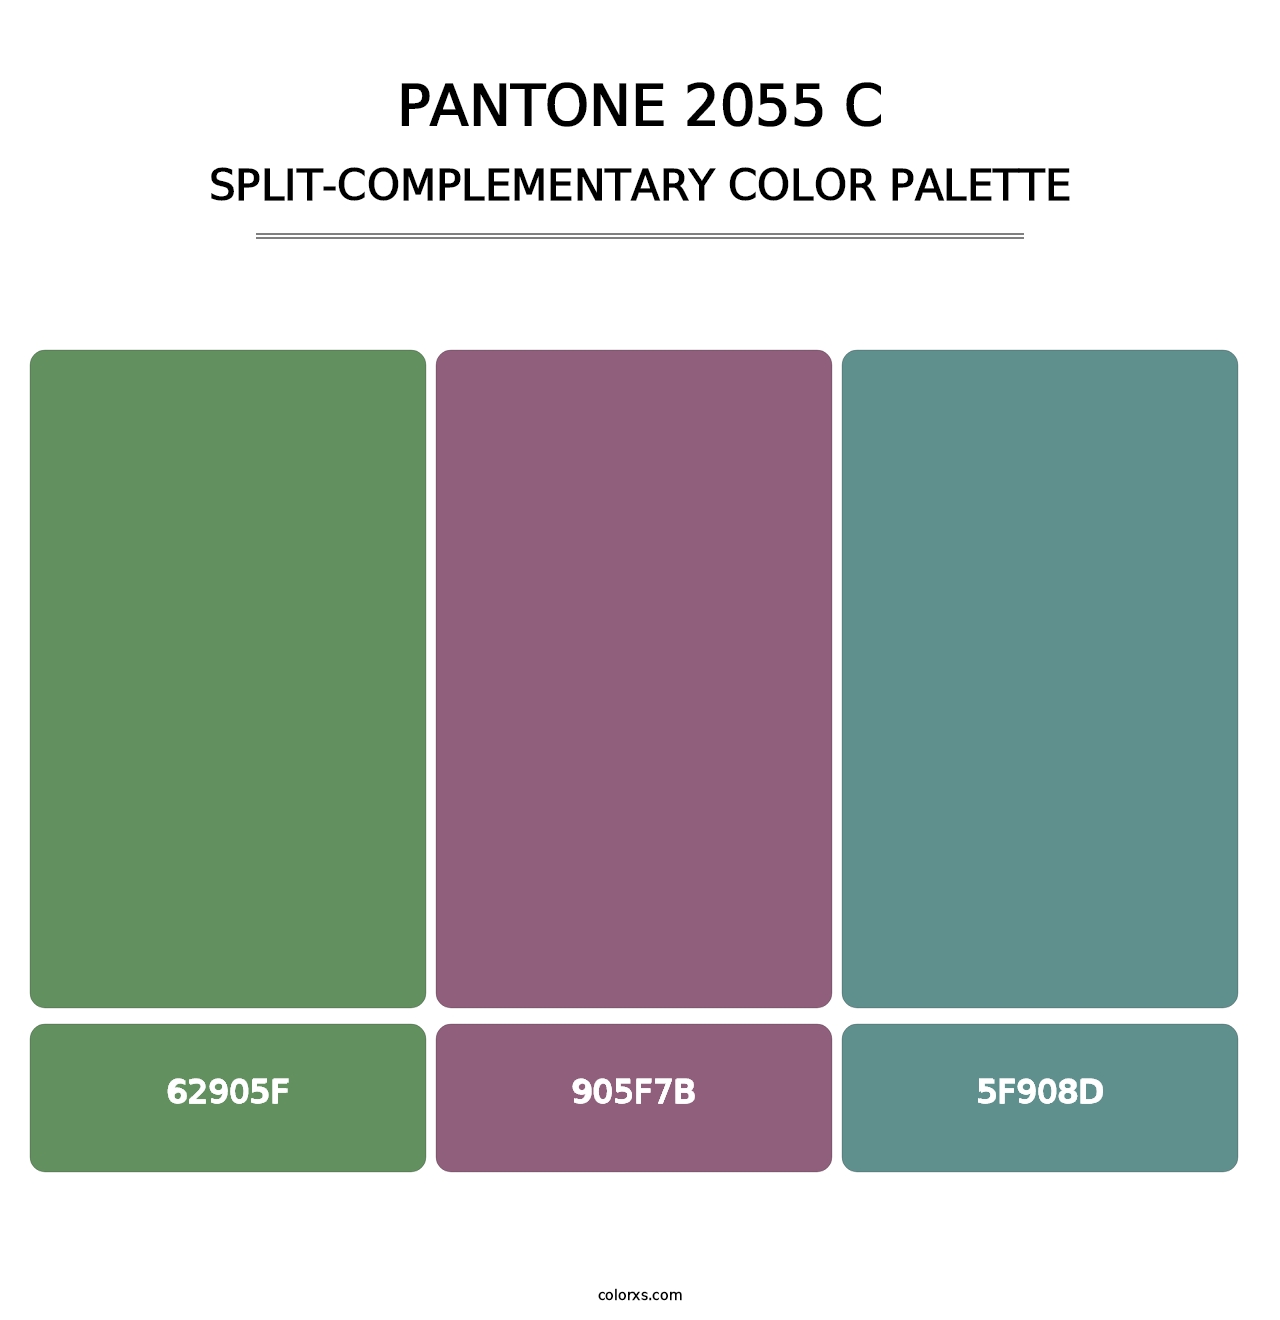 PANTONE 2055 C - Split-Complementary Color Palette